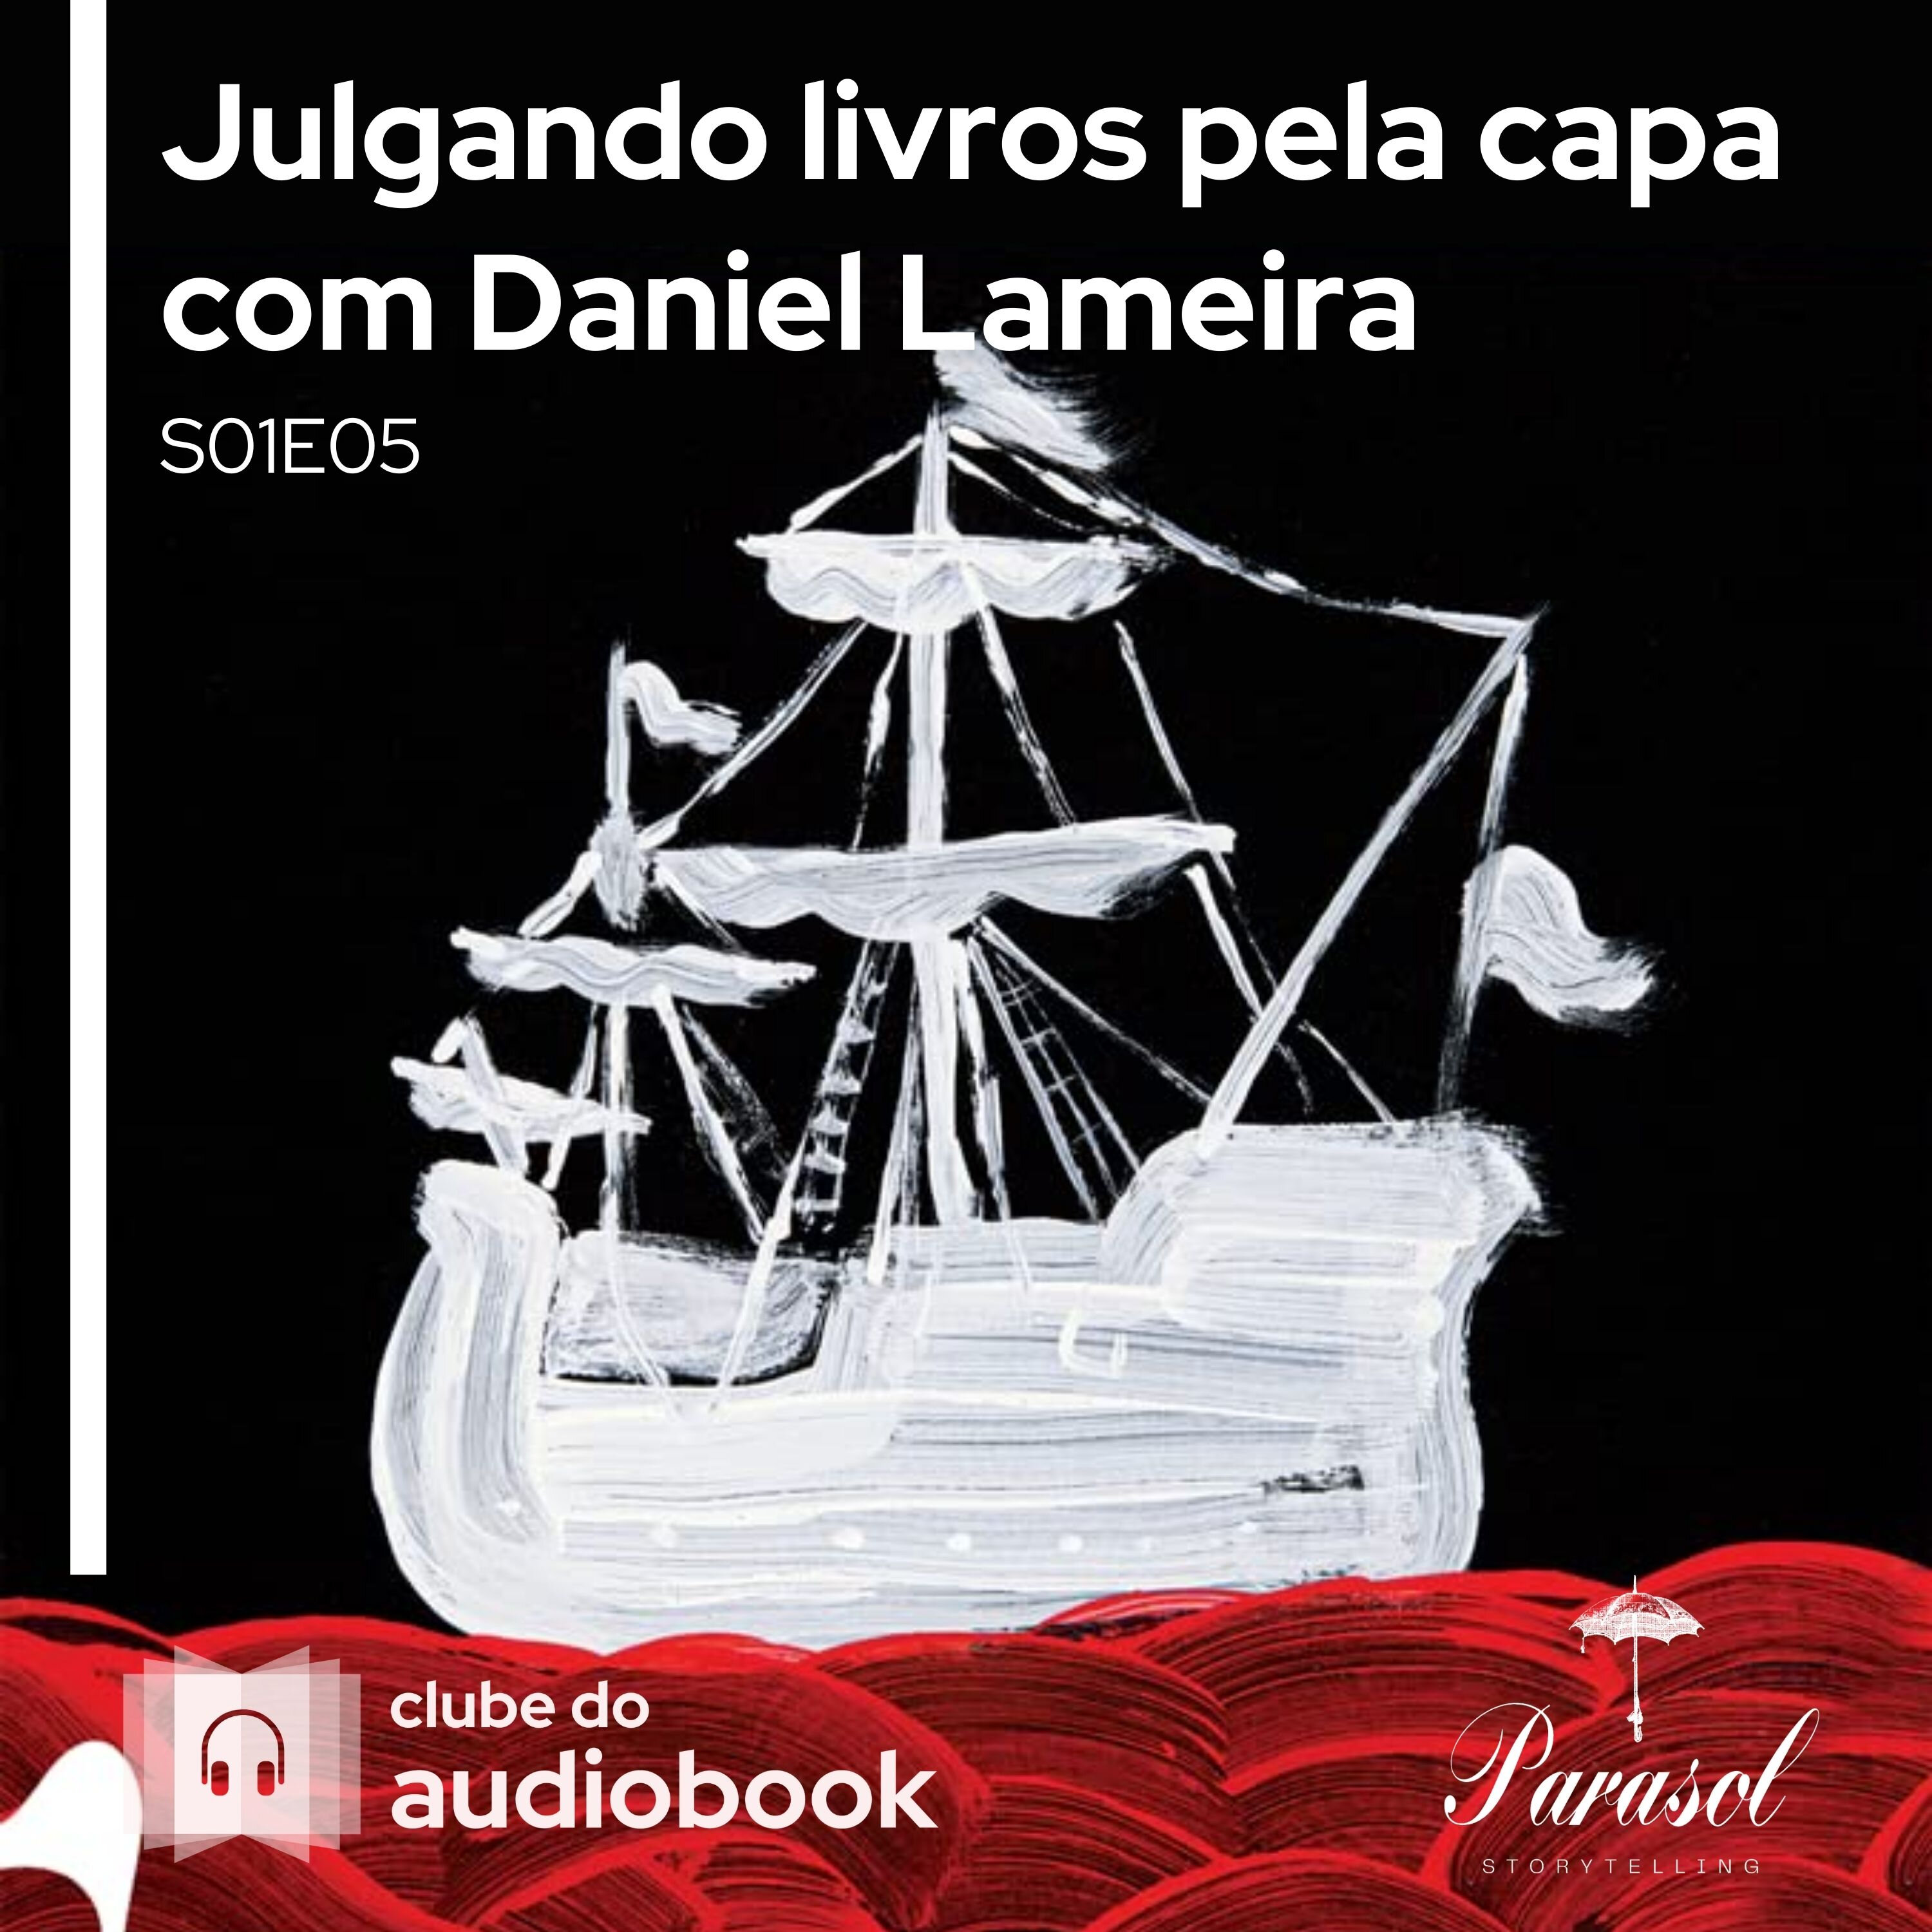 Julgando livros pela capa com Daniel Lameira - Clube do Audiobook - S01E05